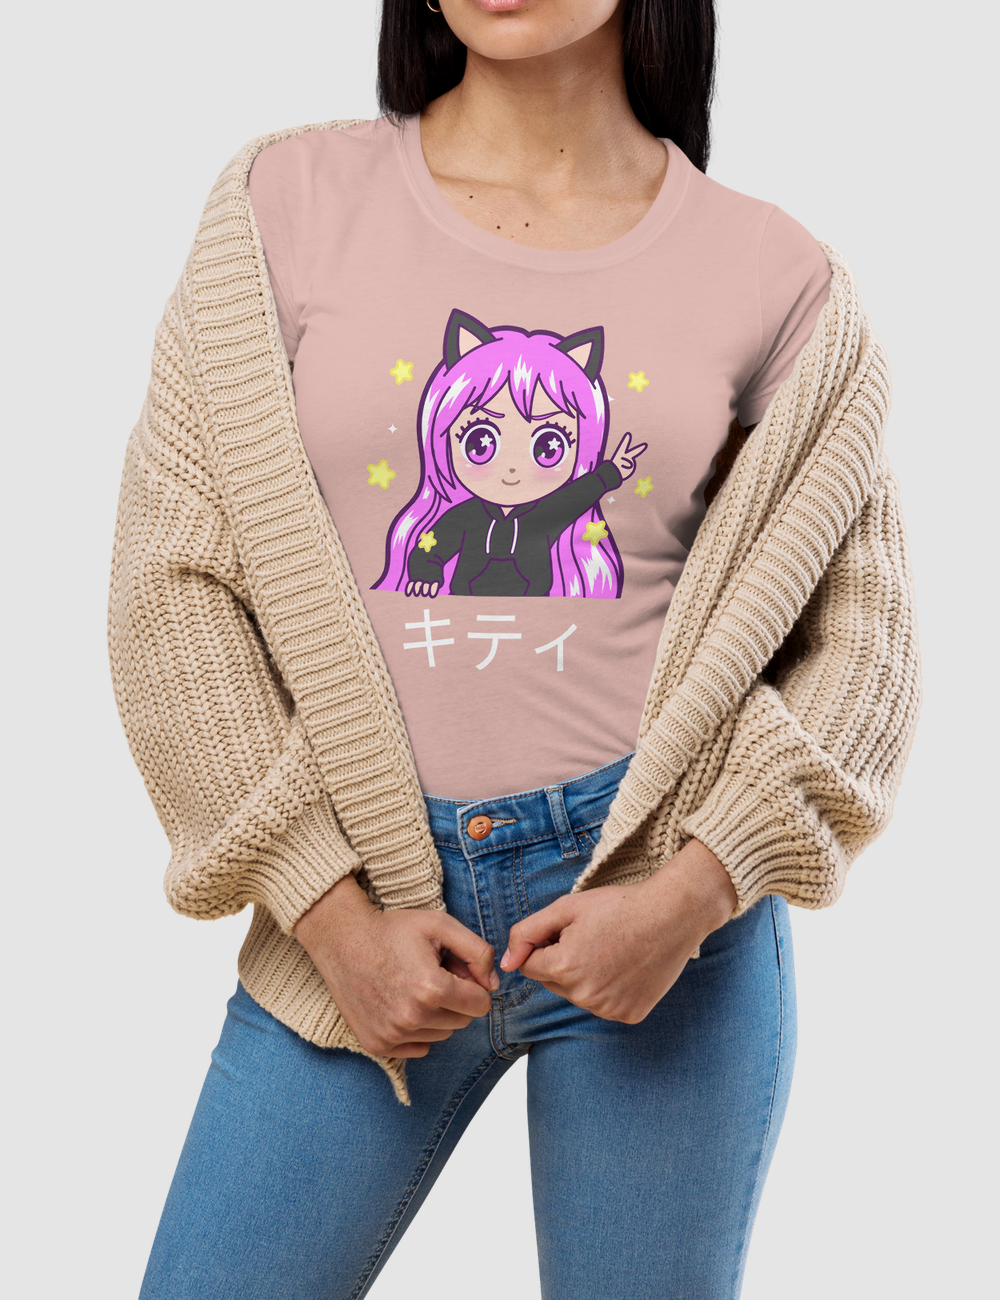 Chibi Kitty Girl | Women's Fitted T-Shirt OniTakai